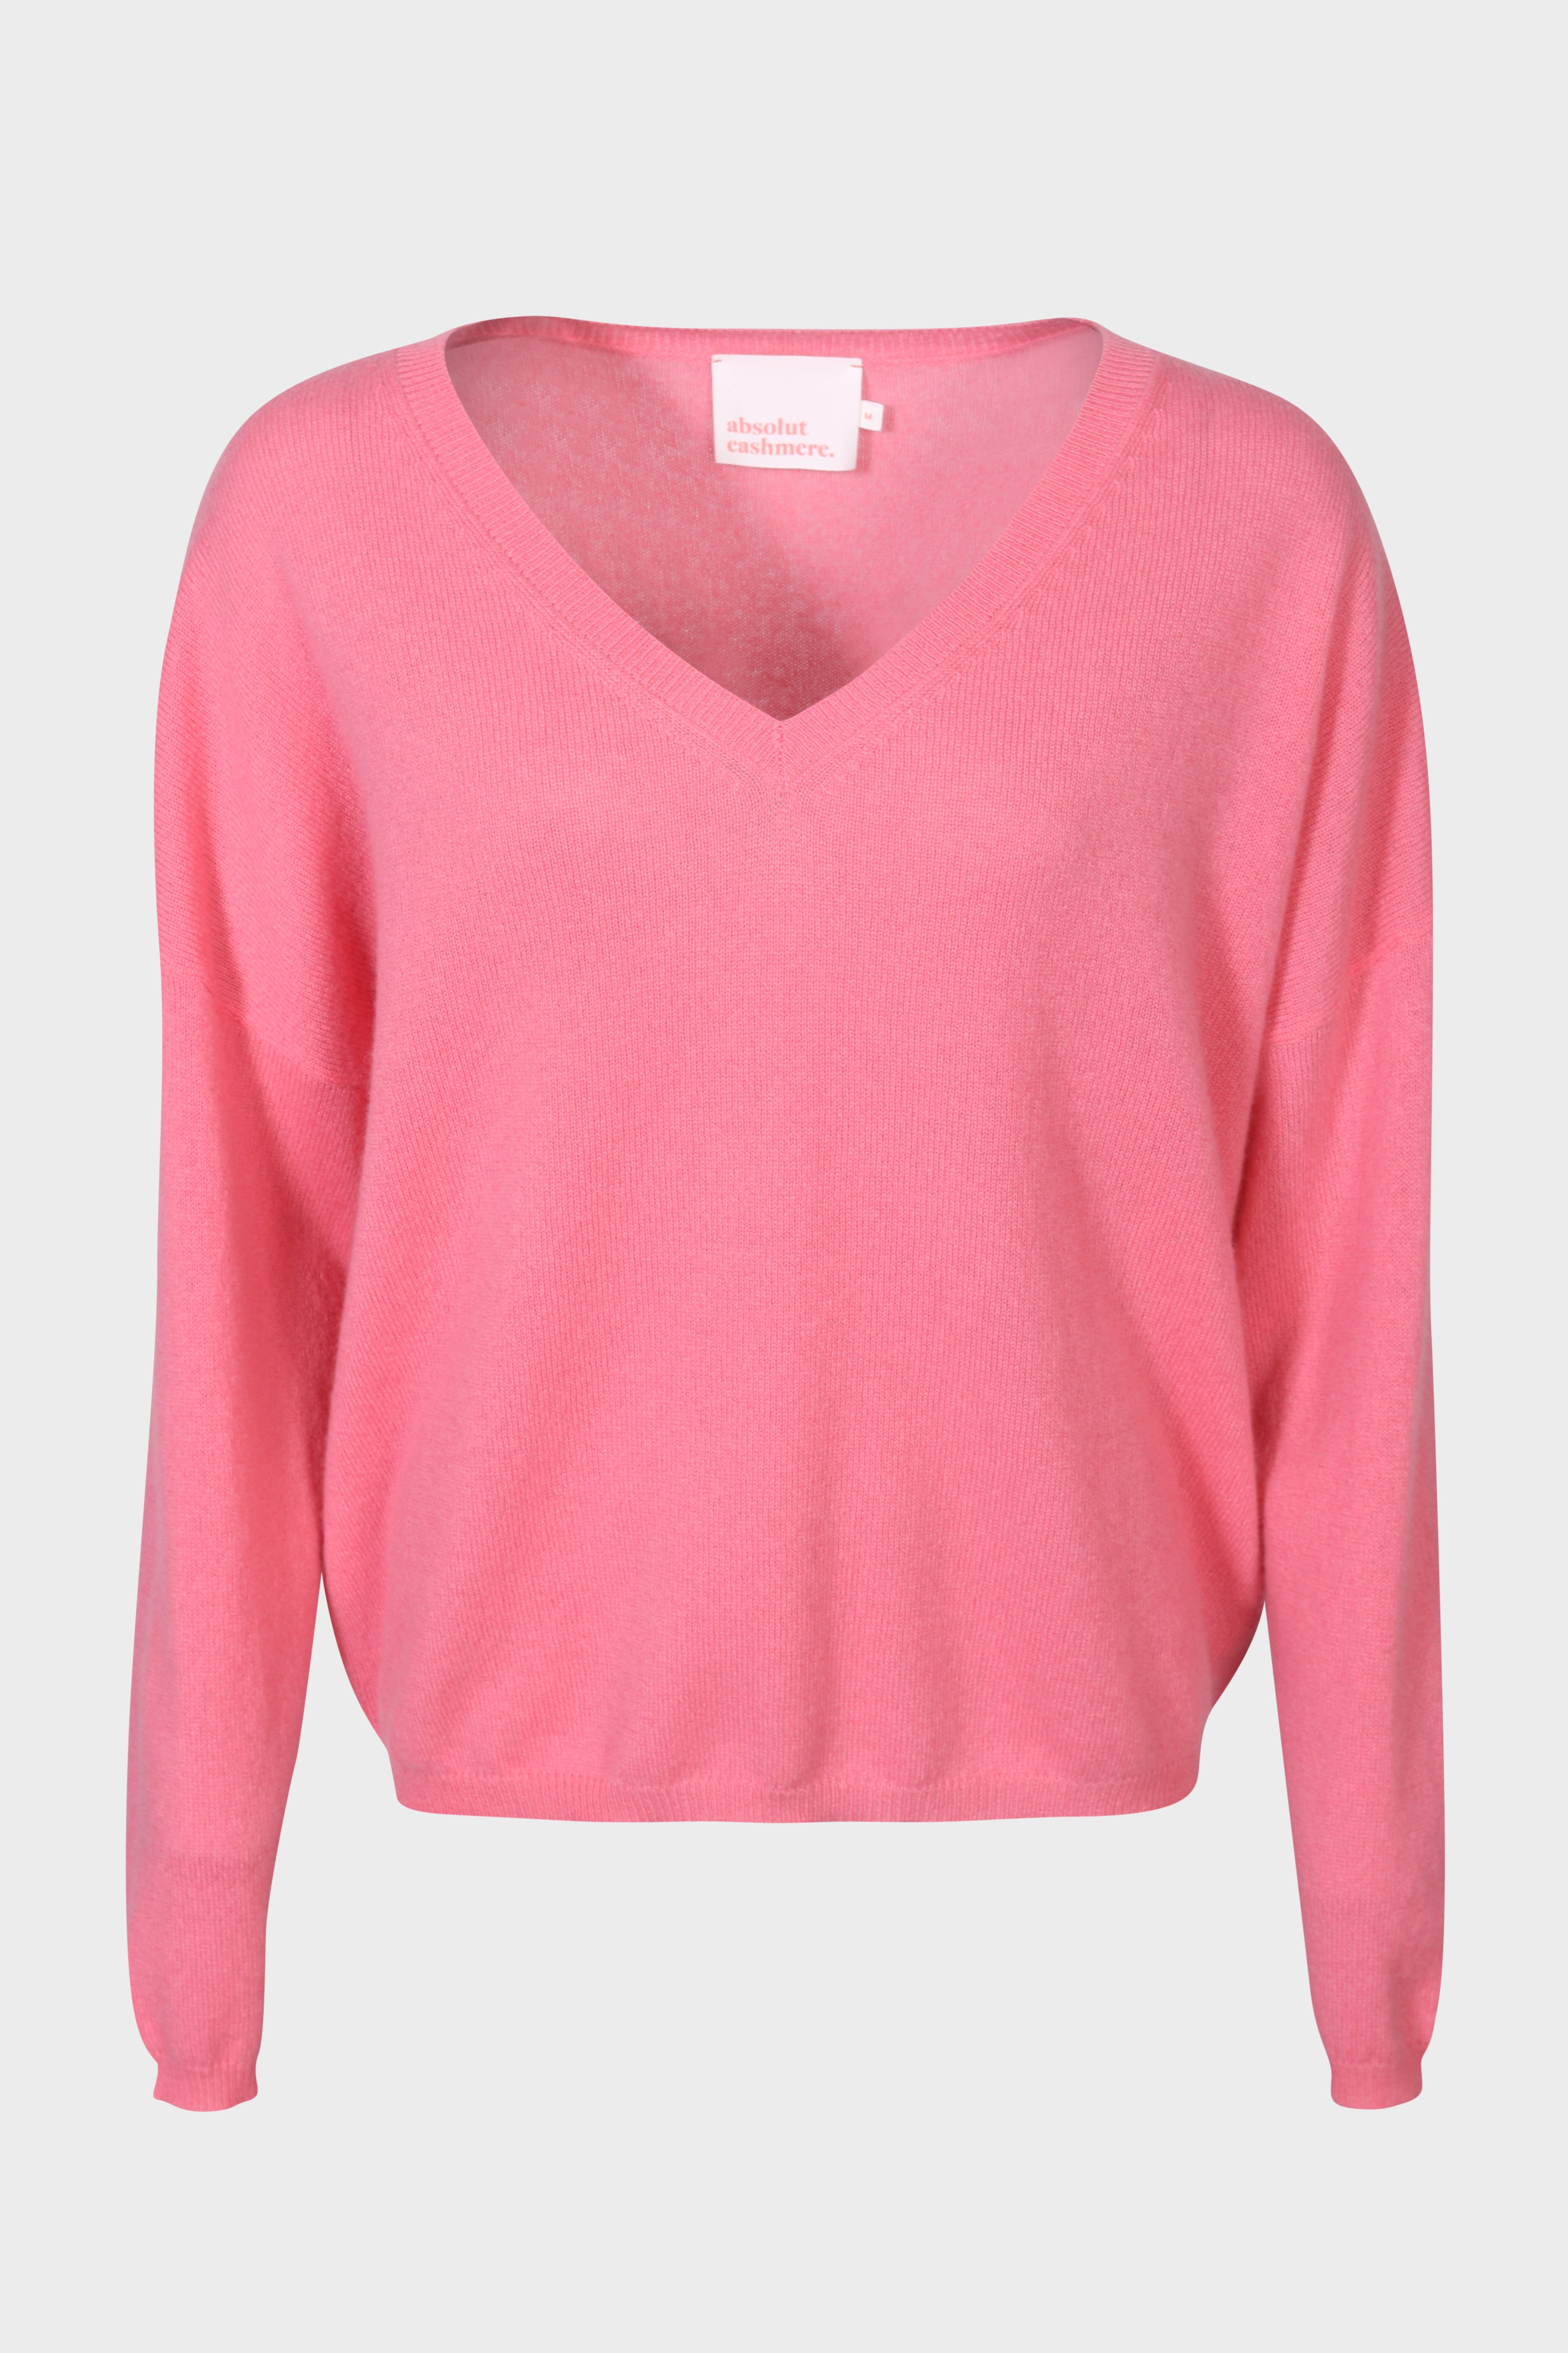 ABSOLUT CASHMERE V-Neck Sweater Alicia Flamingo